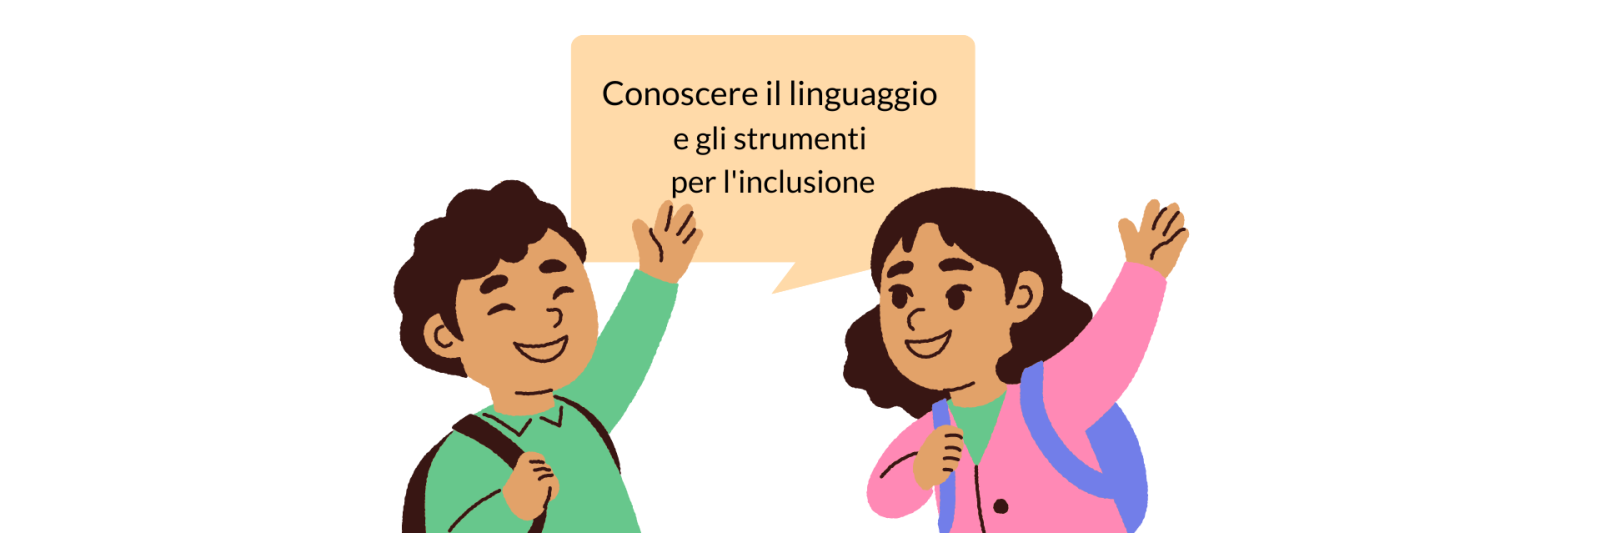 Conoscere il linguaggio e gli strumenti per l'inclusione